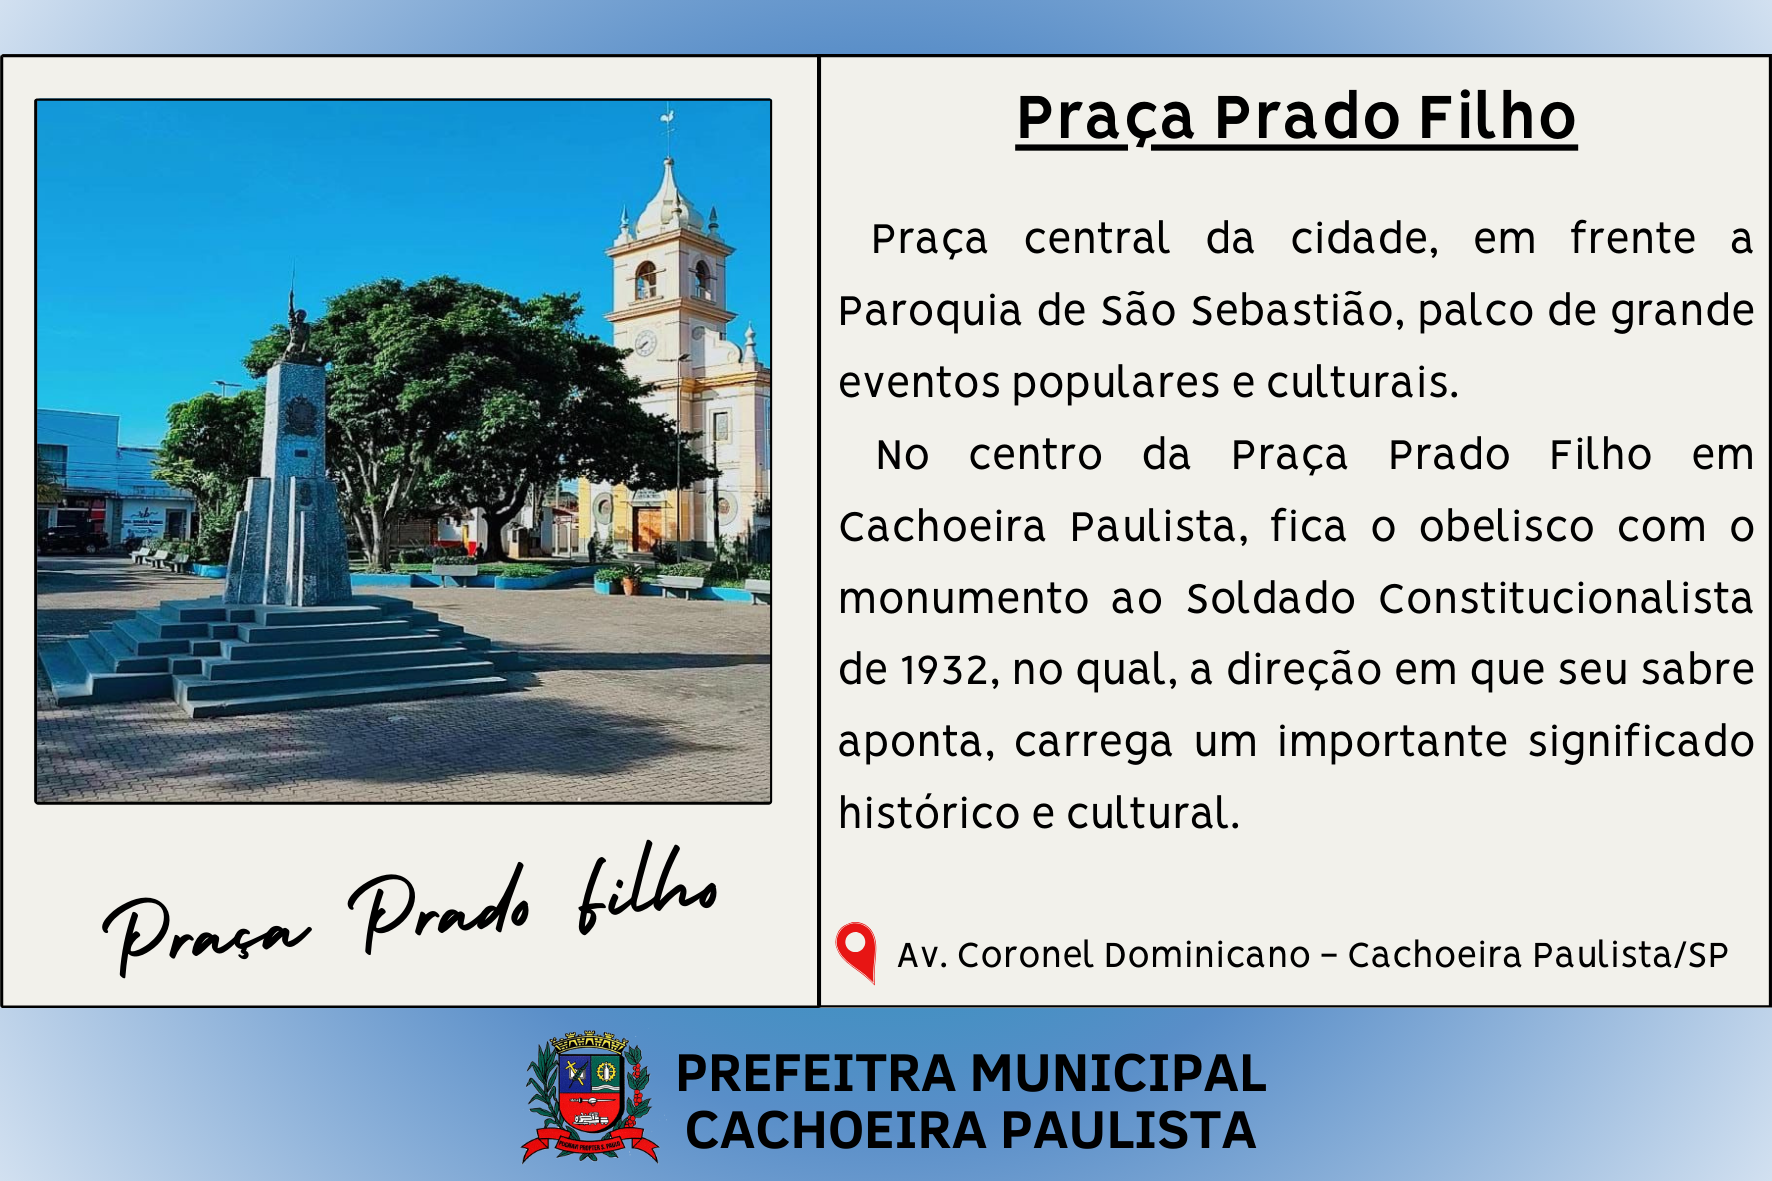 Praça Prado Filho